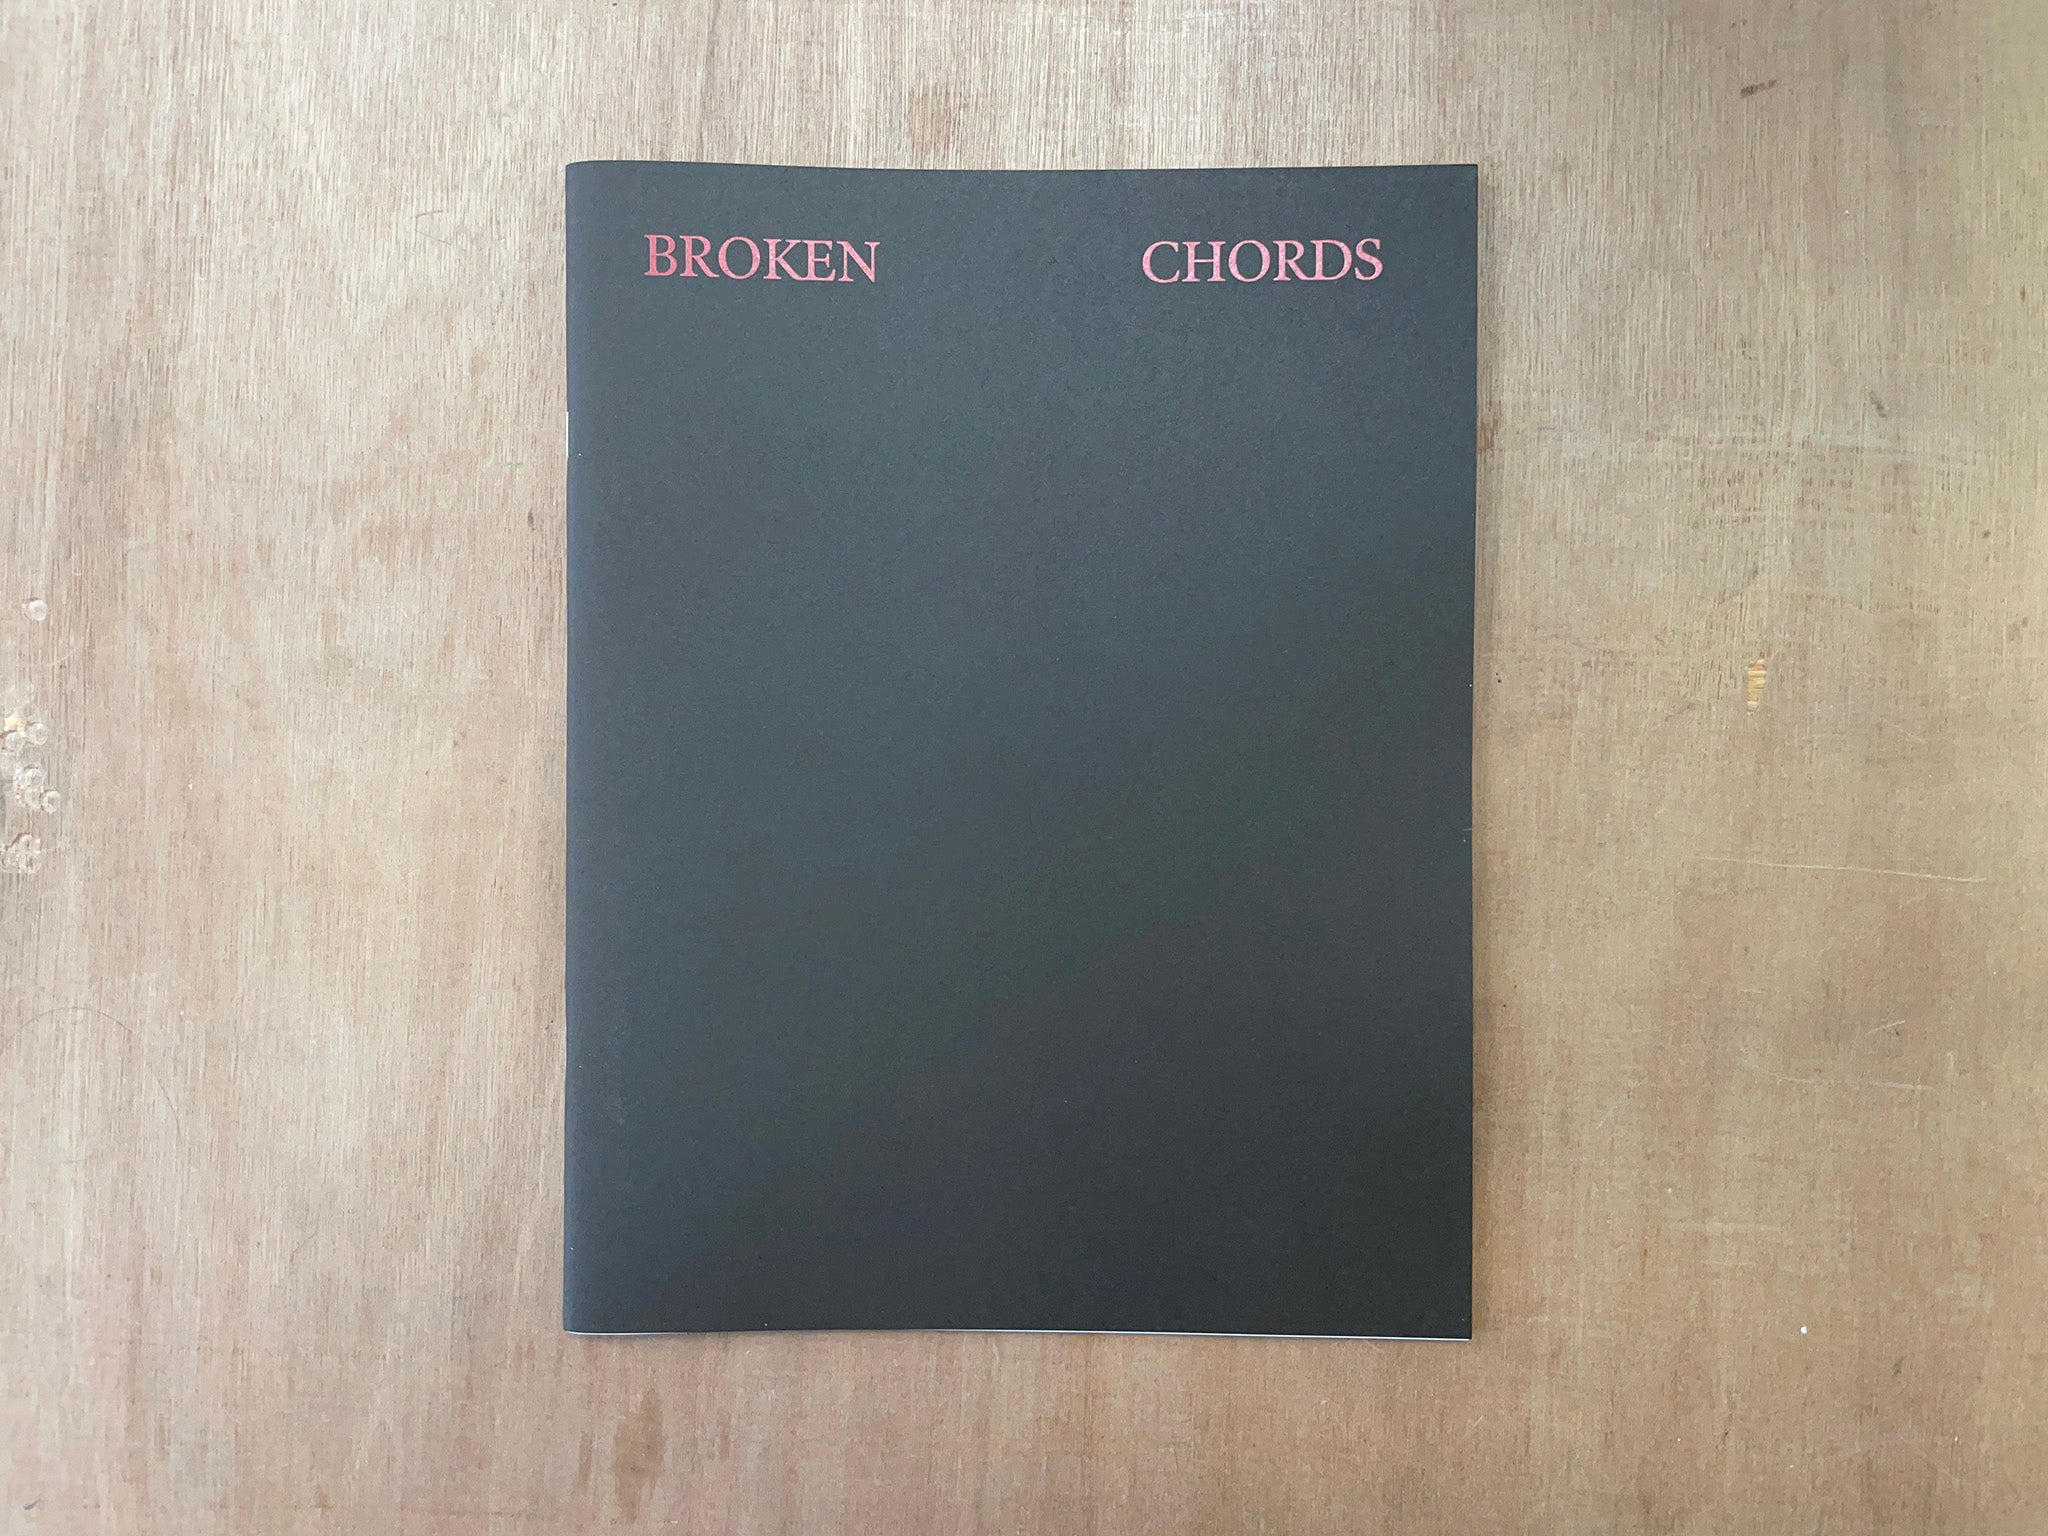 BROKEN CHORDS by Nickolas Mohanna